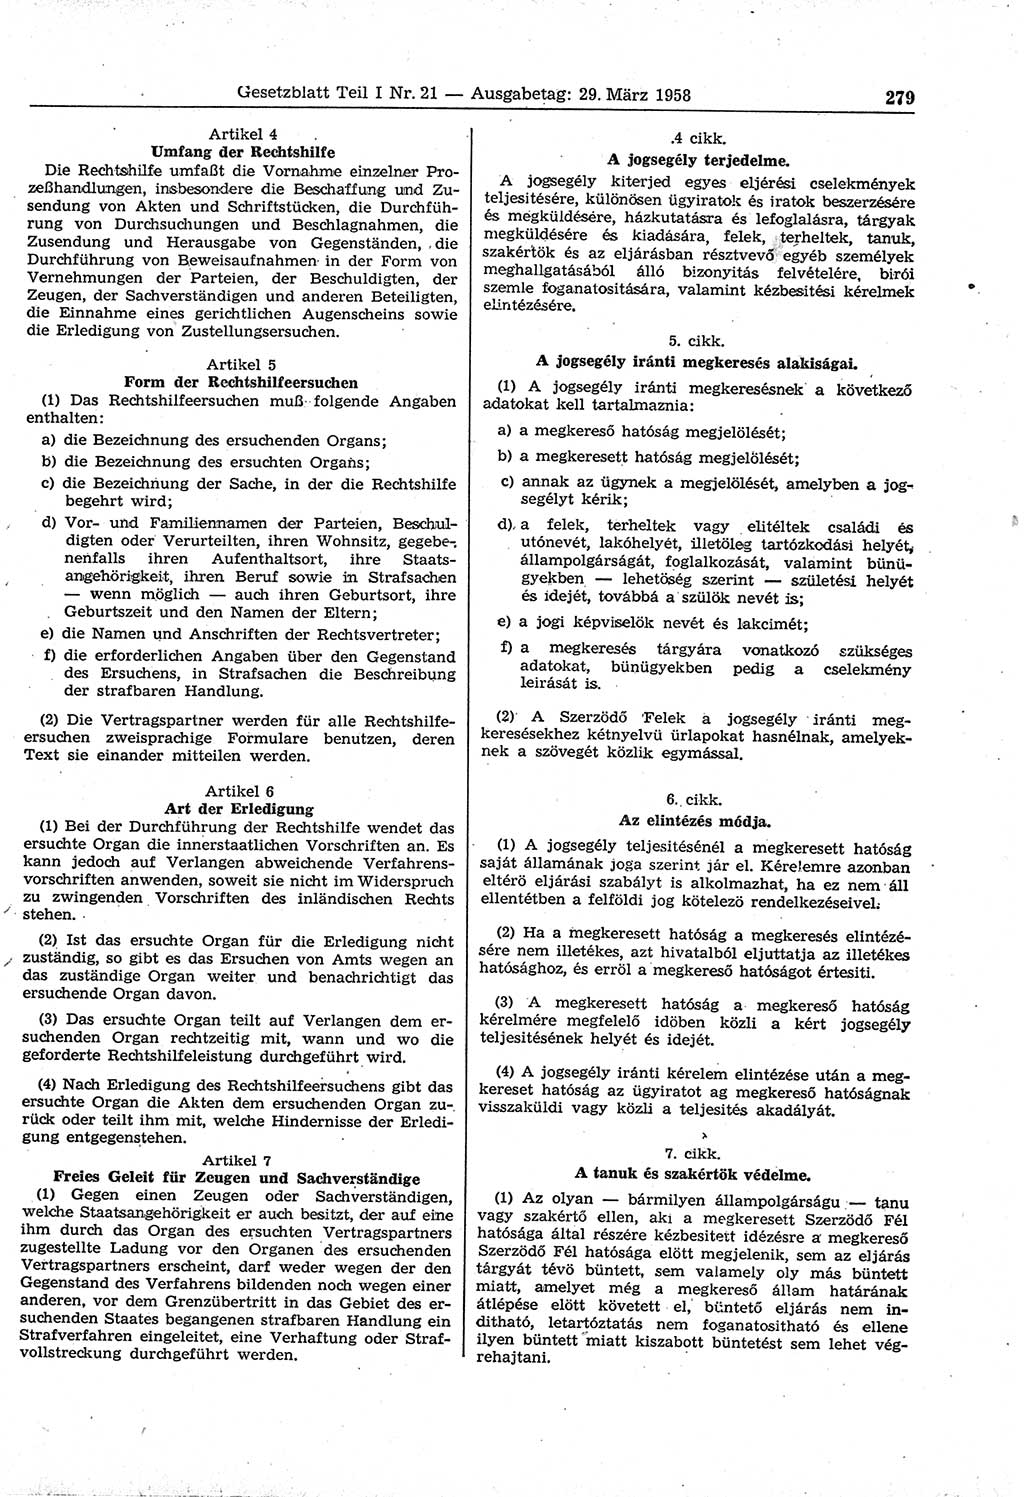 Gesetzblatt (GBl.) der Deutschen Demokratischen Republik (DDR) Teil Ⅰ 1958, Seite 279 (GBl. DDR Ⅰ 1958, S. 279)